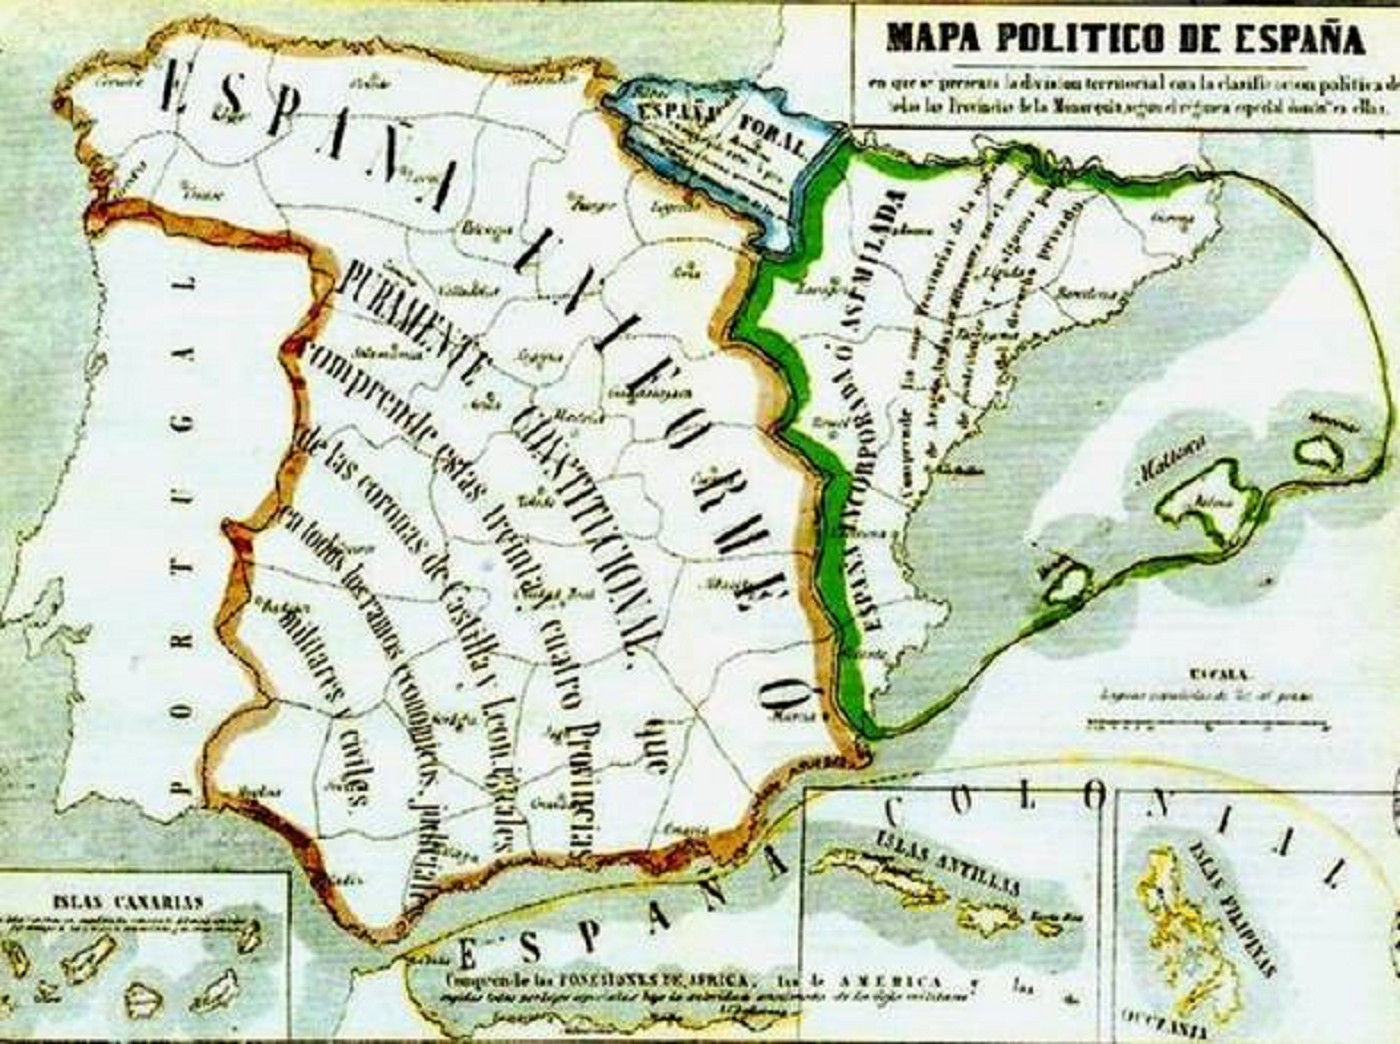 Pino y Cebadilla se nombrado presidente de la I República española. Mapa politic d'espanya (1854). Fuente Biblioteca Nacional de España